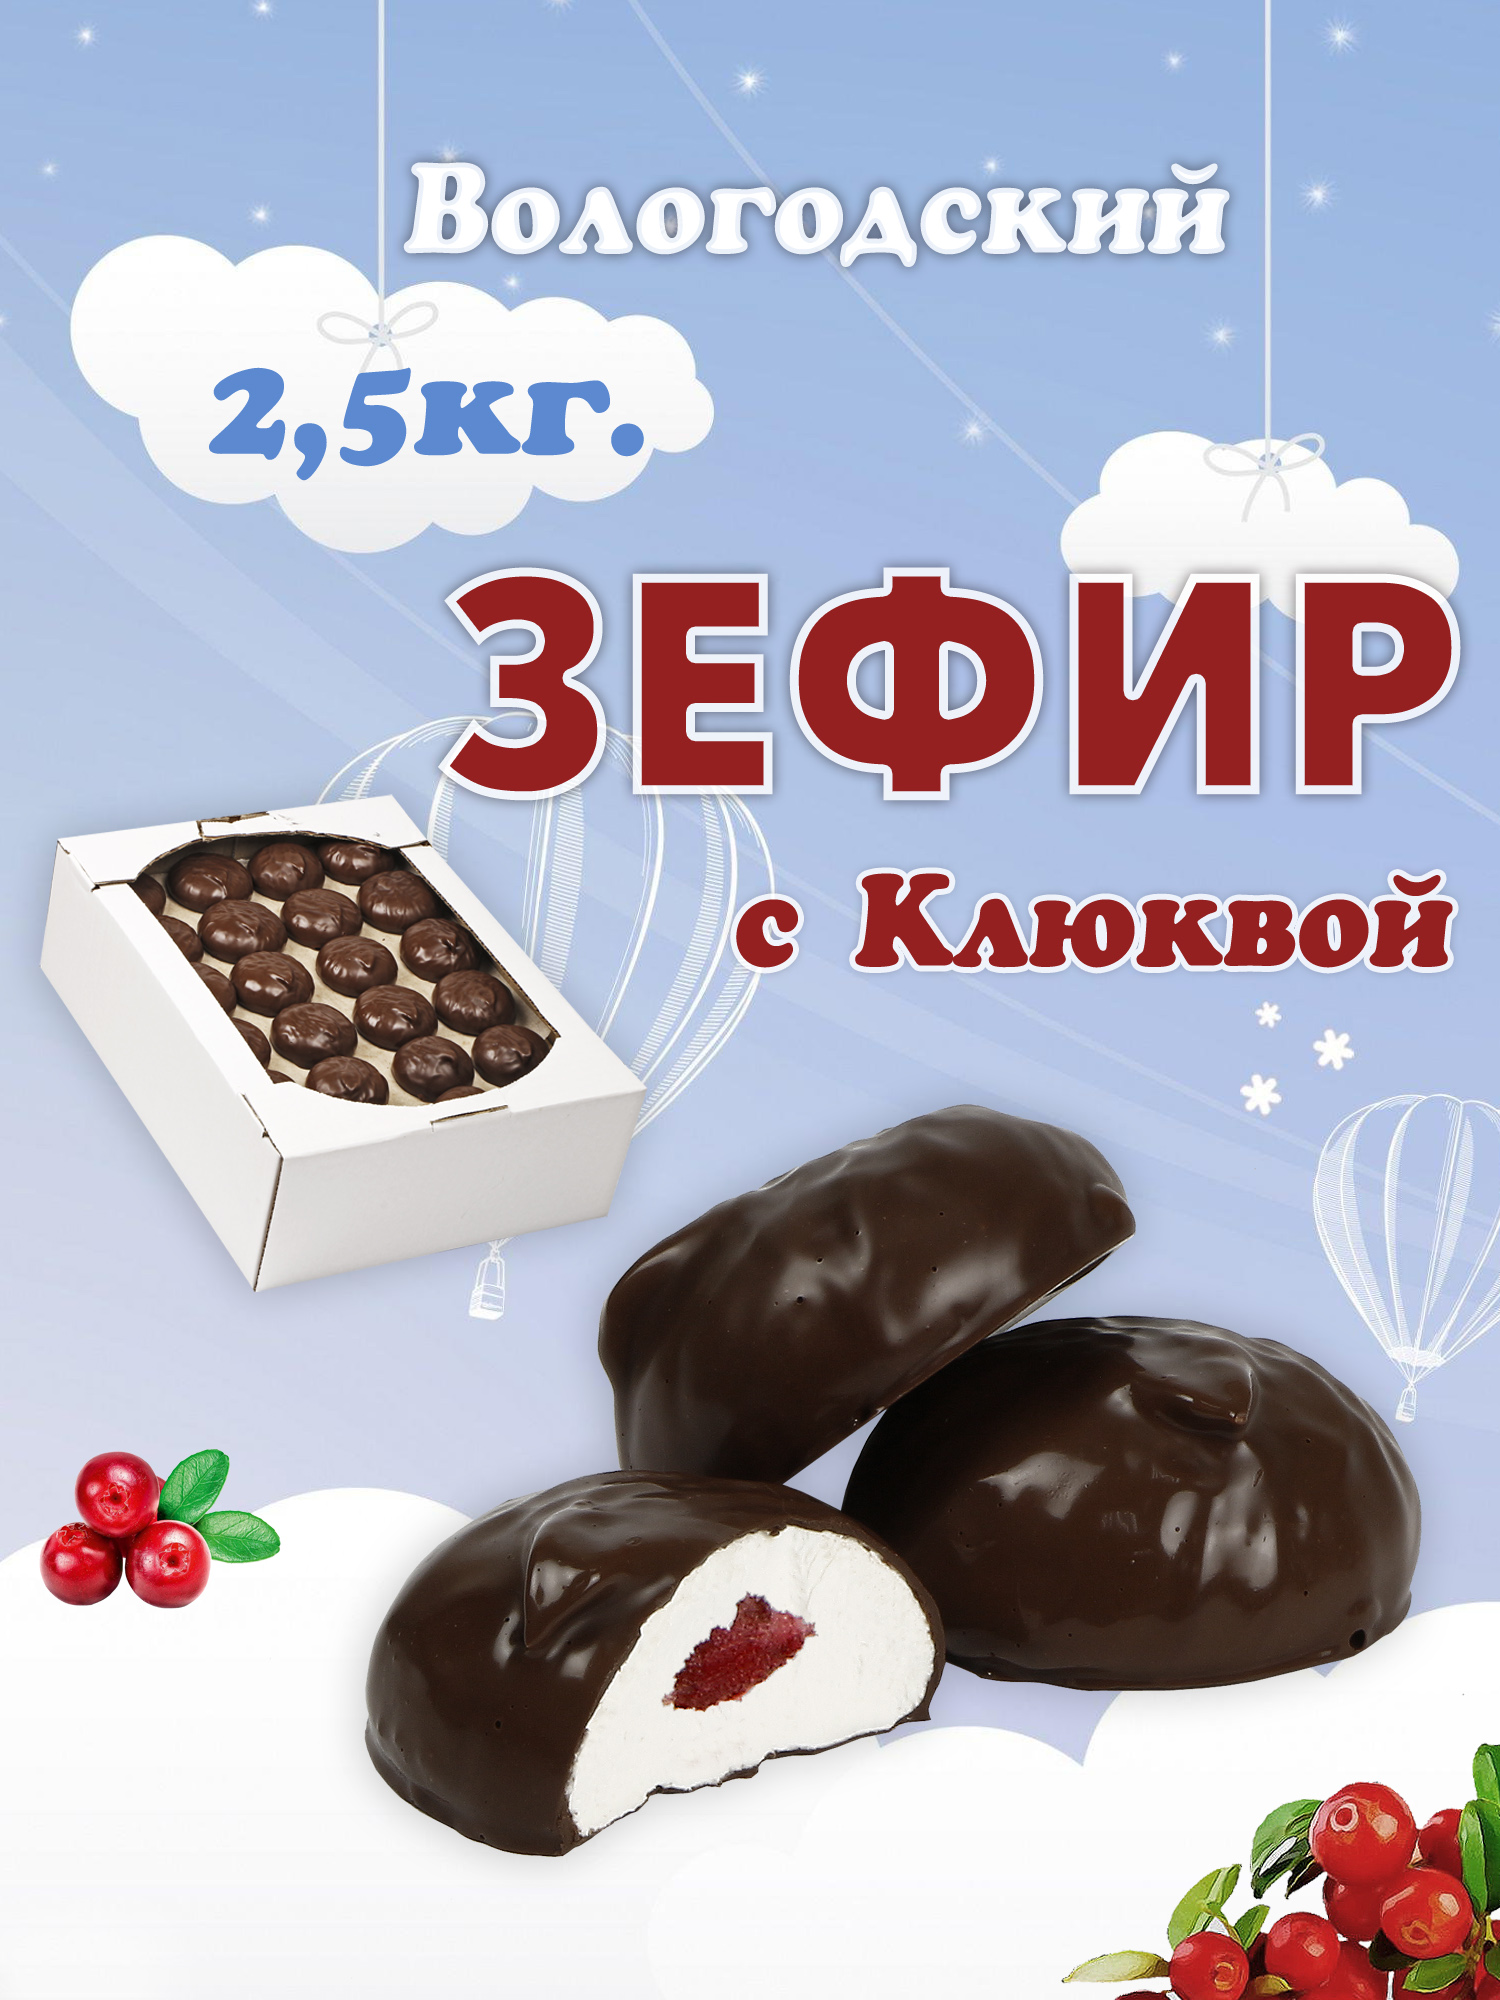 Зефир Вологодский в шоколаде с Клюквой 2,5кг.  .jpg